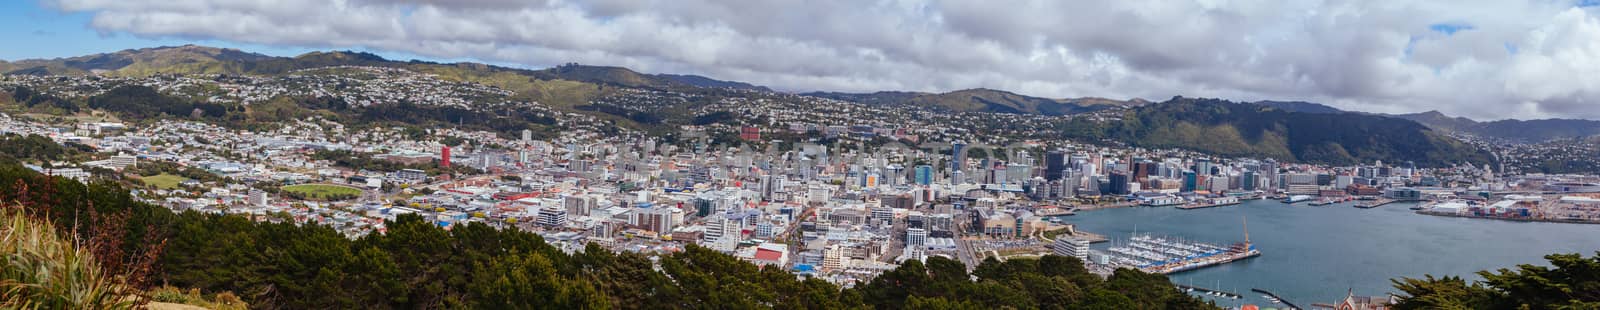 Wellington Skyline in New Zealand by FiledIMAGE